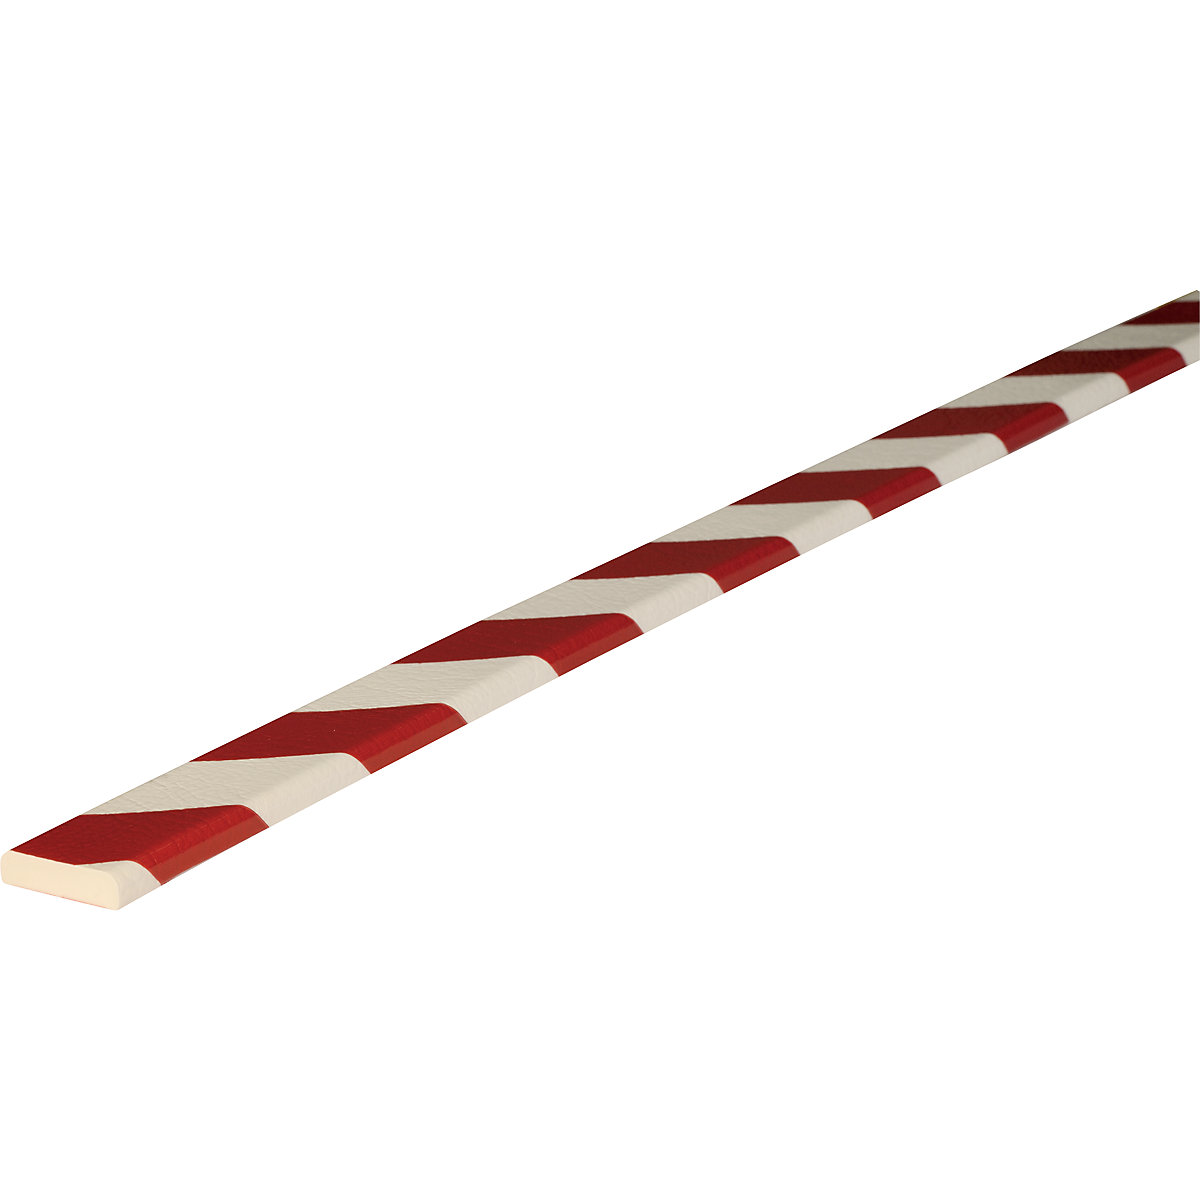 Protección de superficies Knuffi® – SHG, tipo F, 1 rollo de 5 m, en rojo y blanco-28